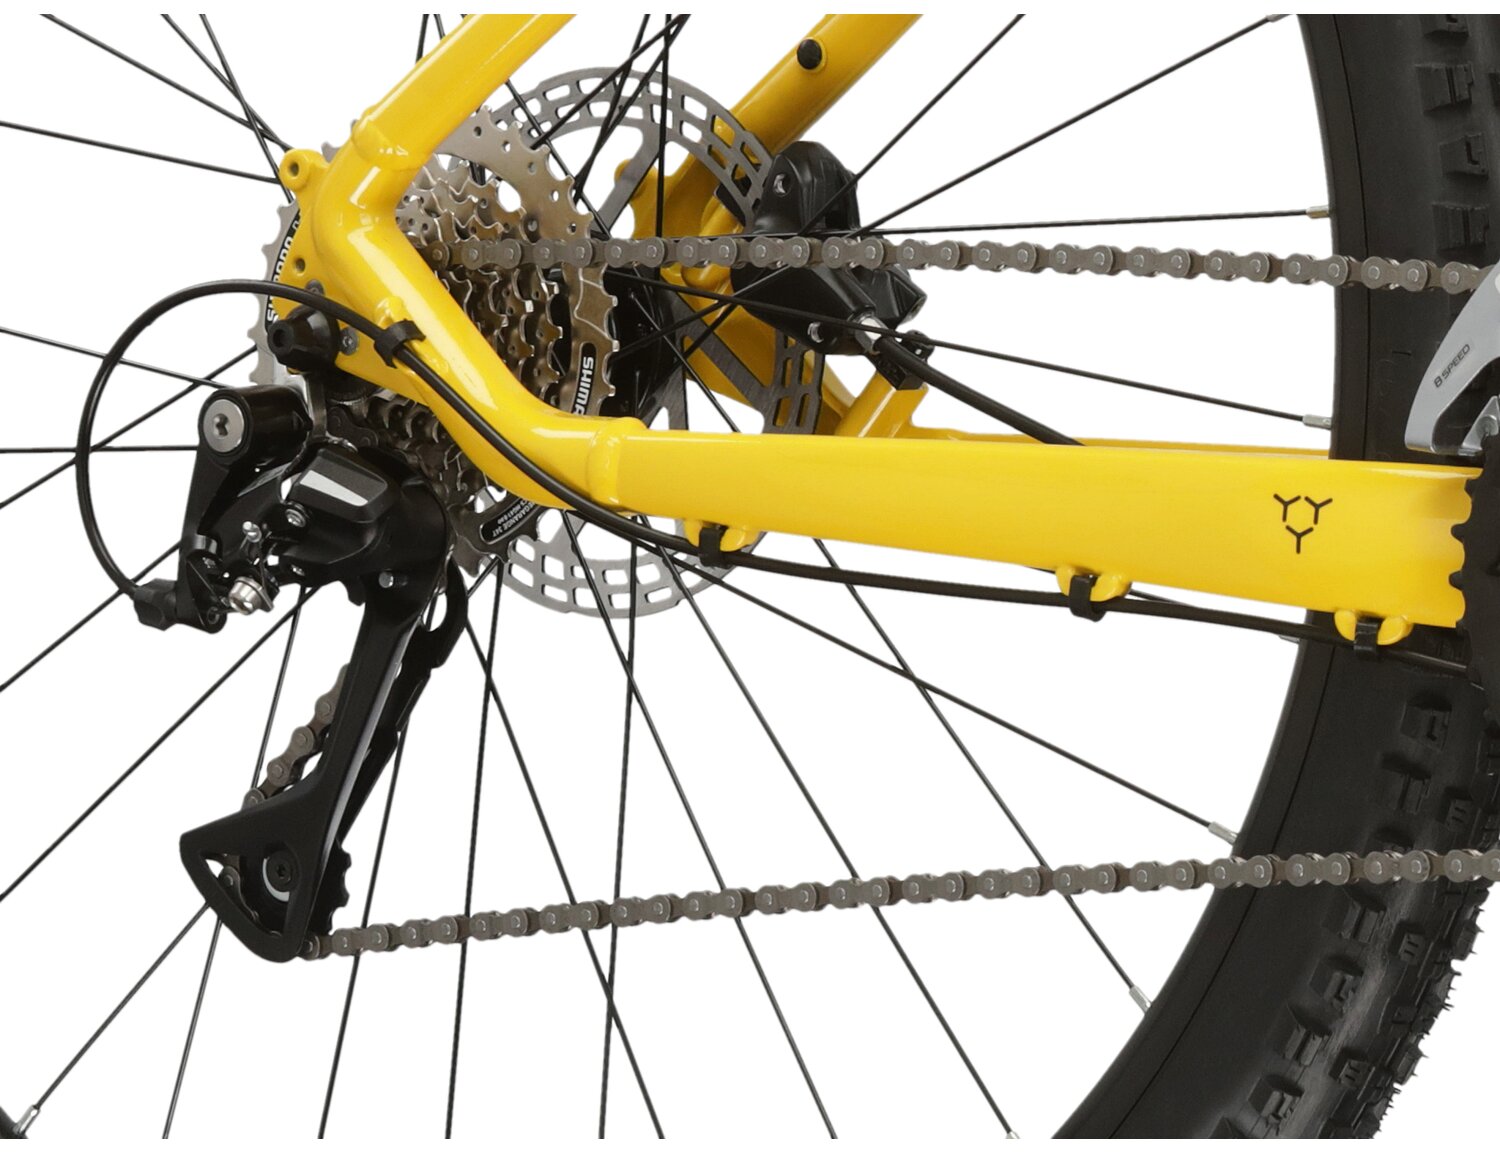  Tylna ośmiobiegowa przerzutka Shimano Acera RD M3020 oraz hydrauliczne hamulce tarczowe Shimano MT200 w rowerze górskim MTB KROSS Hexagon 4.0 